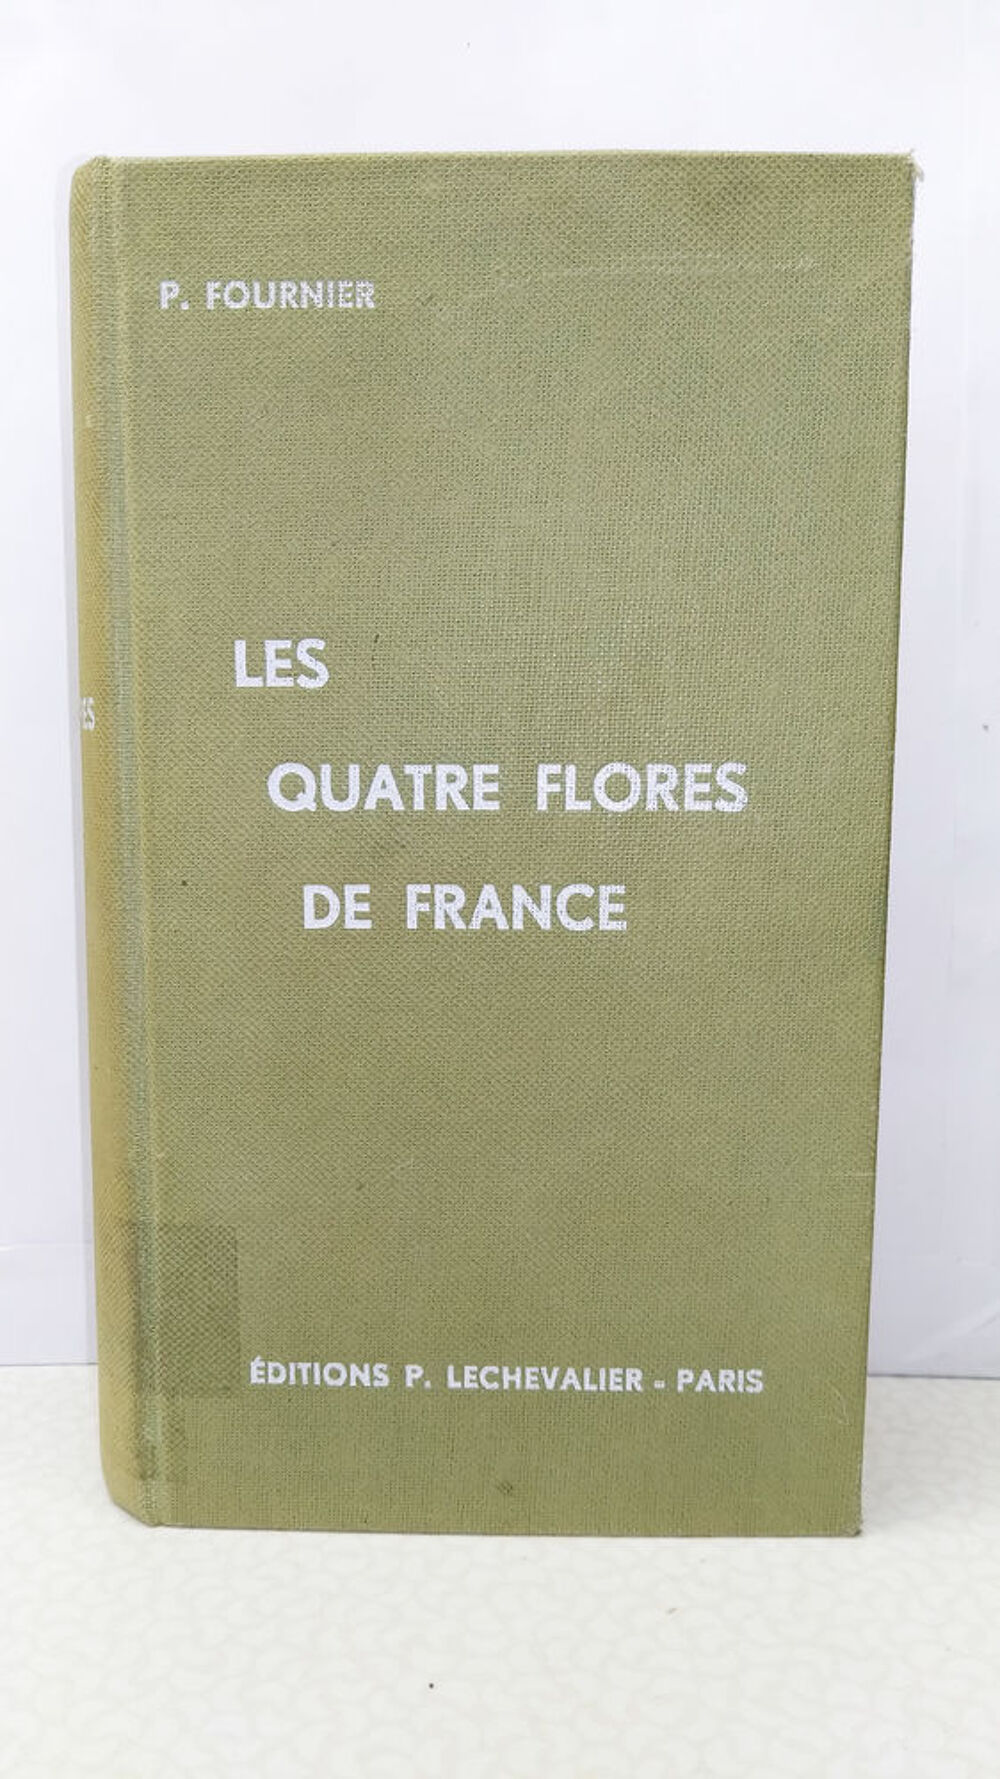 Les quatre flores de France par P. Fournier Livres et BD